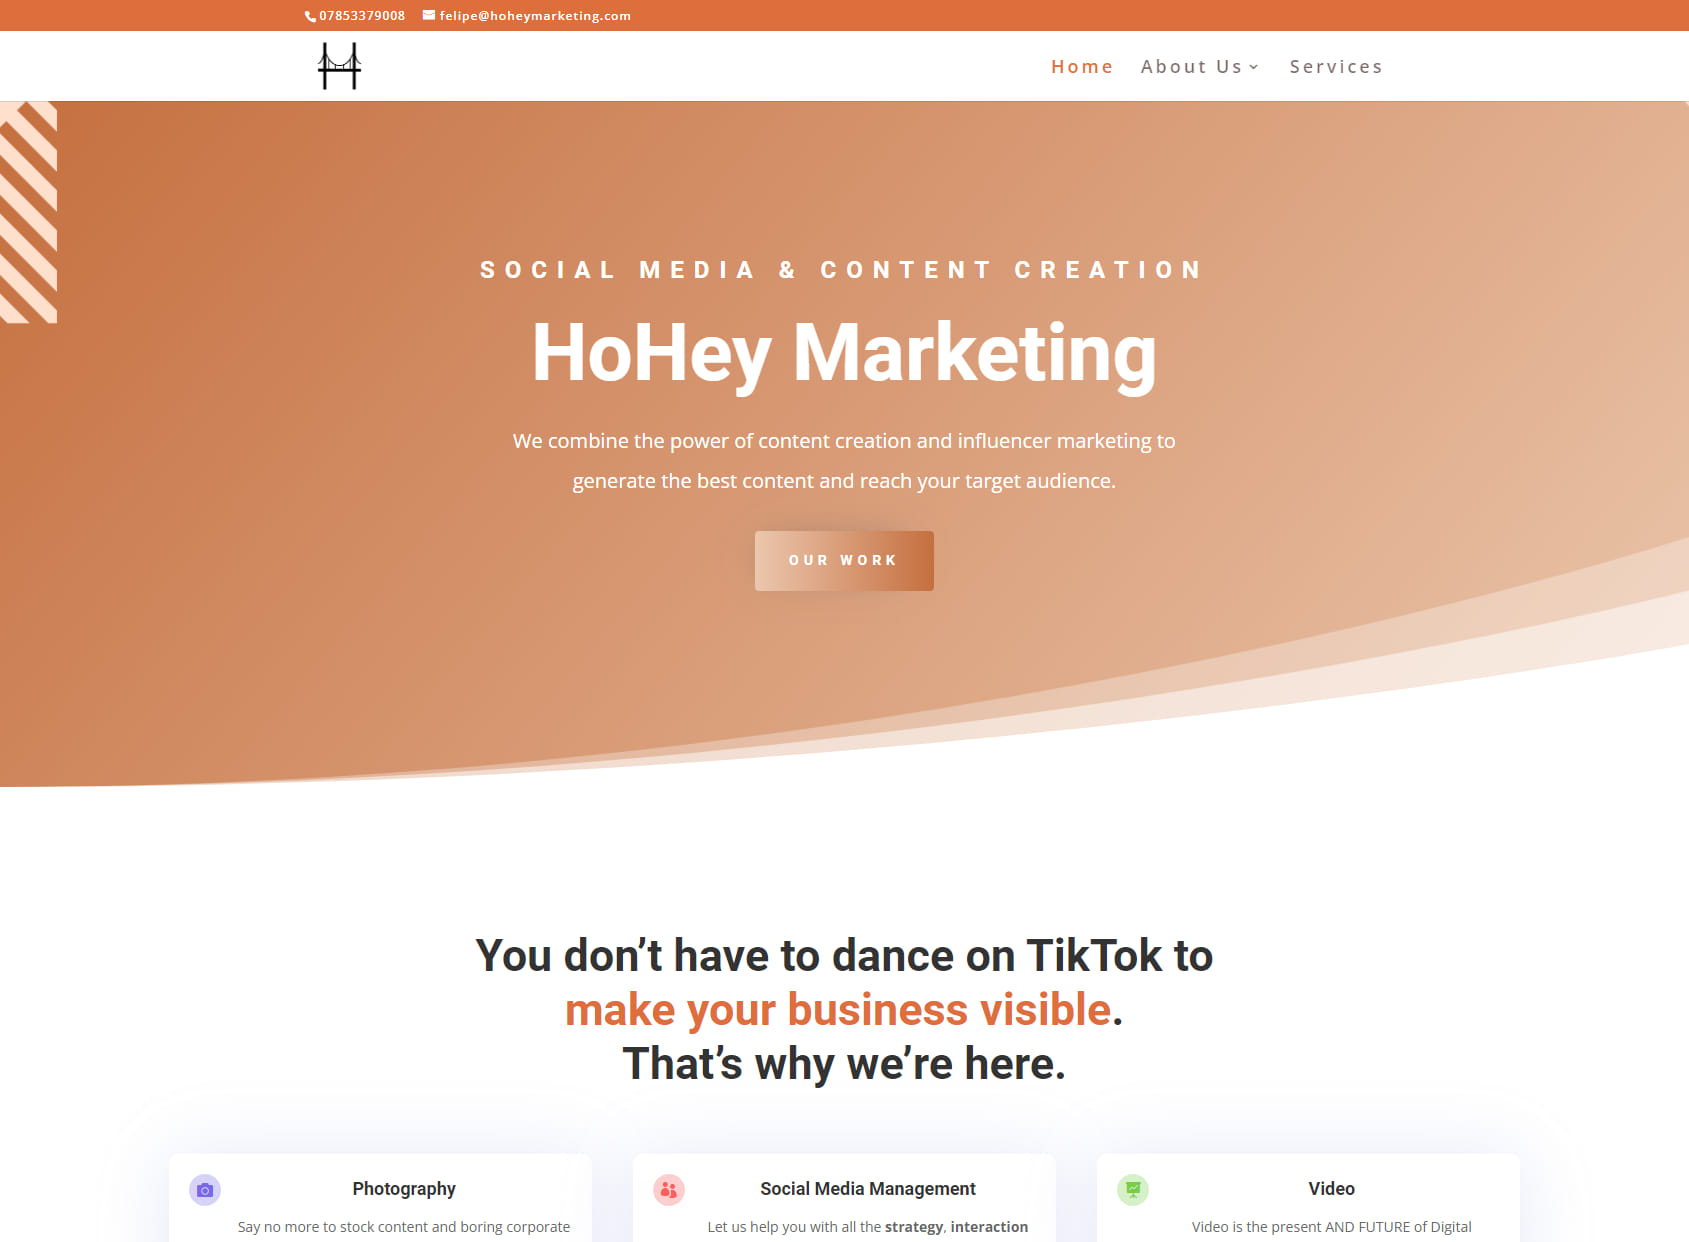 HoHey Marketing Agency